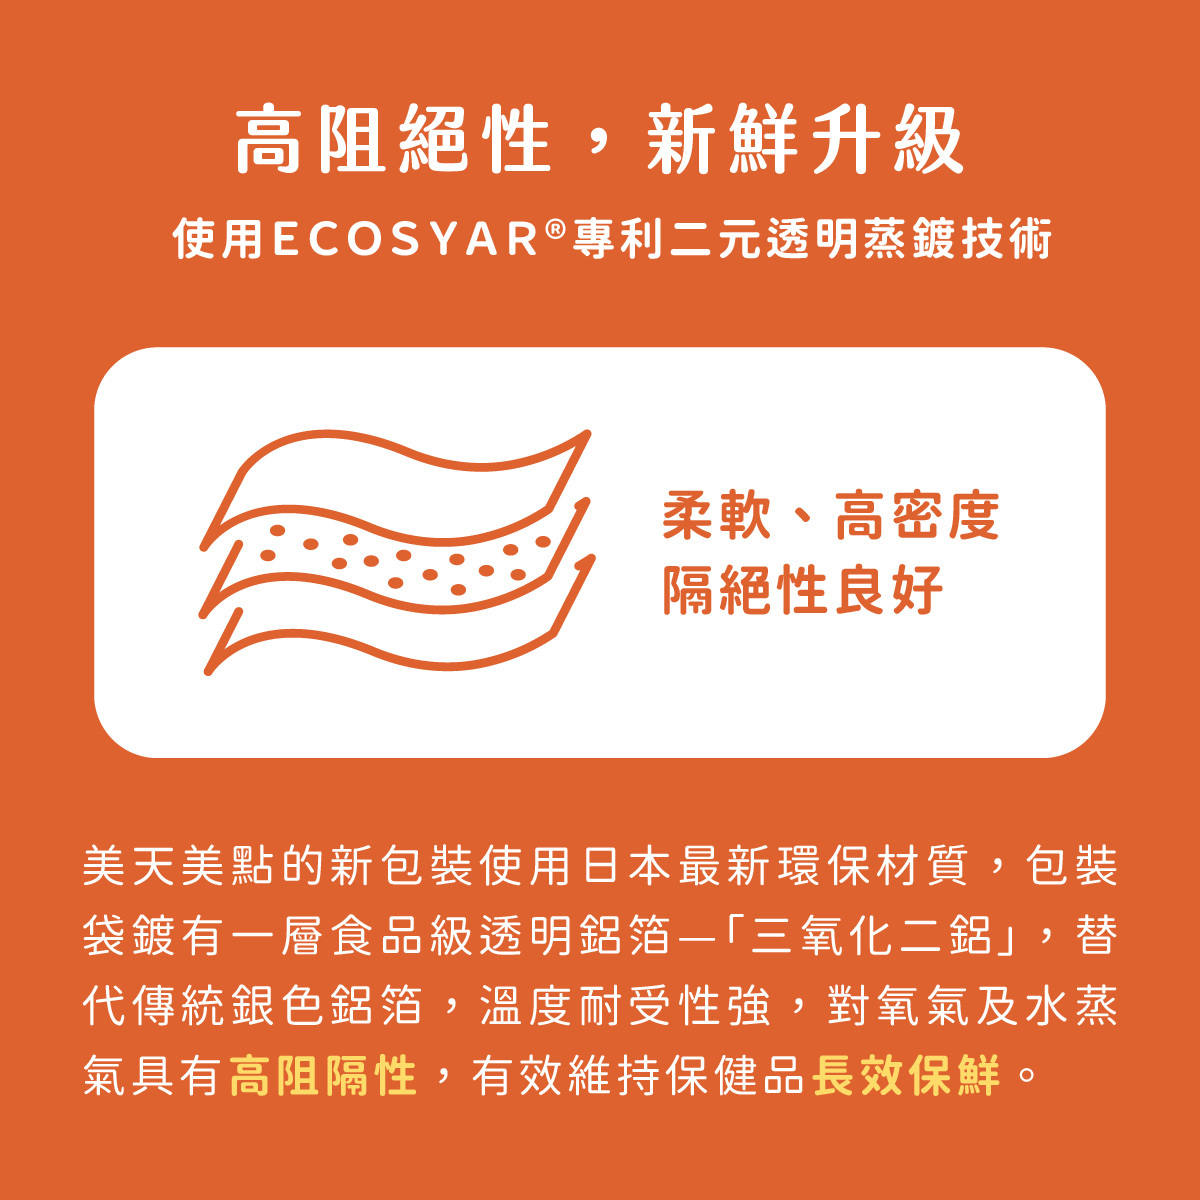 美天美點使用ECOSYAR®專利環保包材，具有高阻絕性，防止包裝受潮